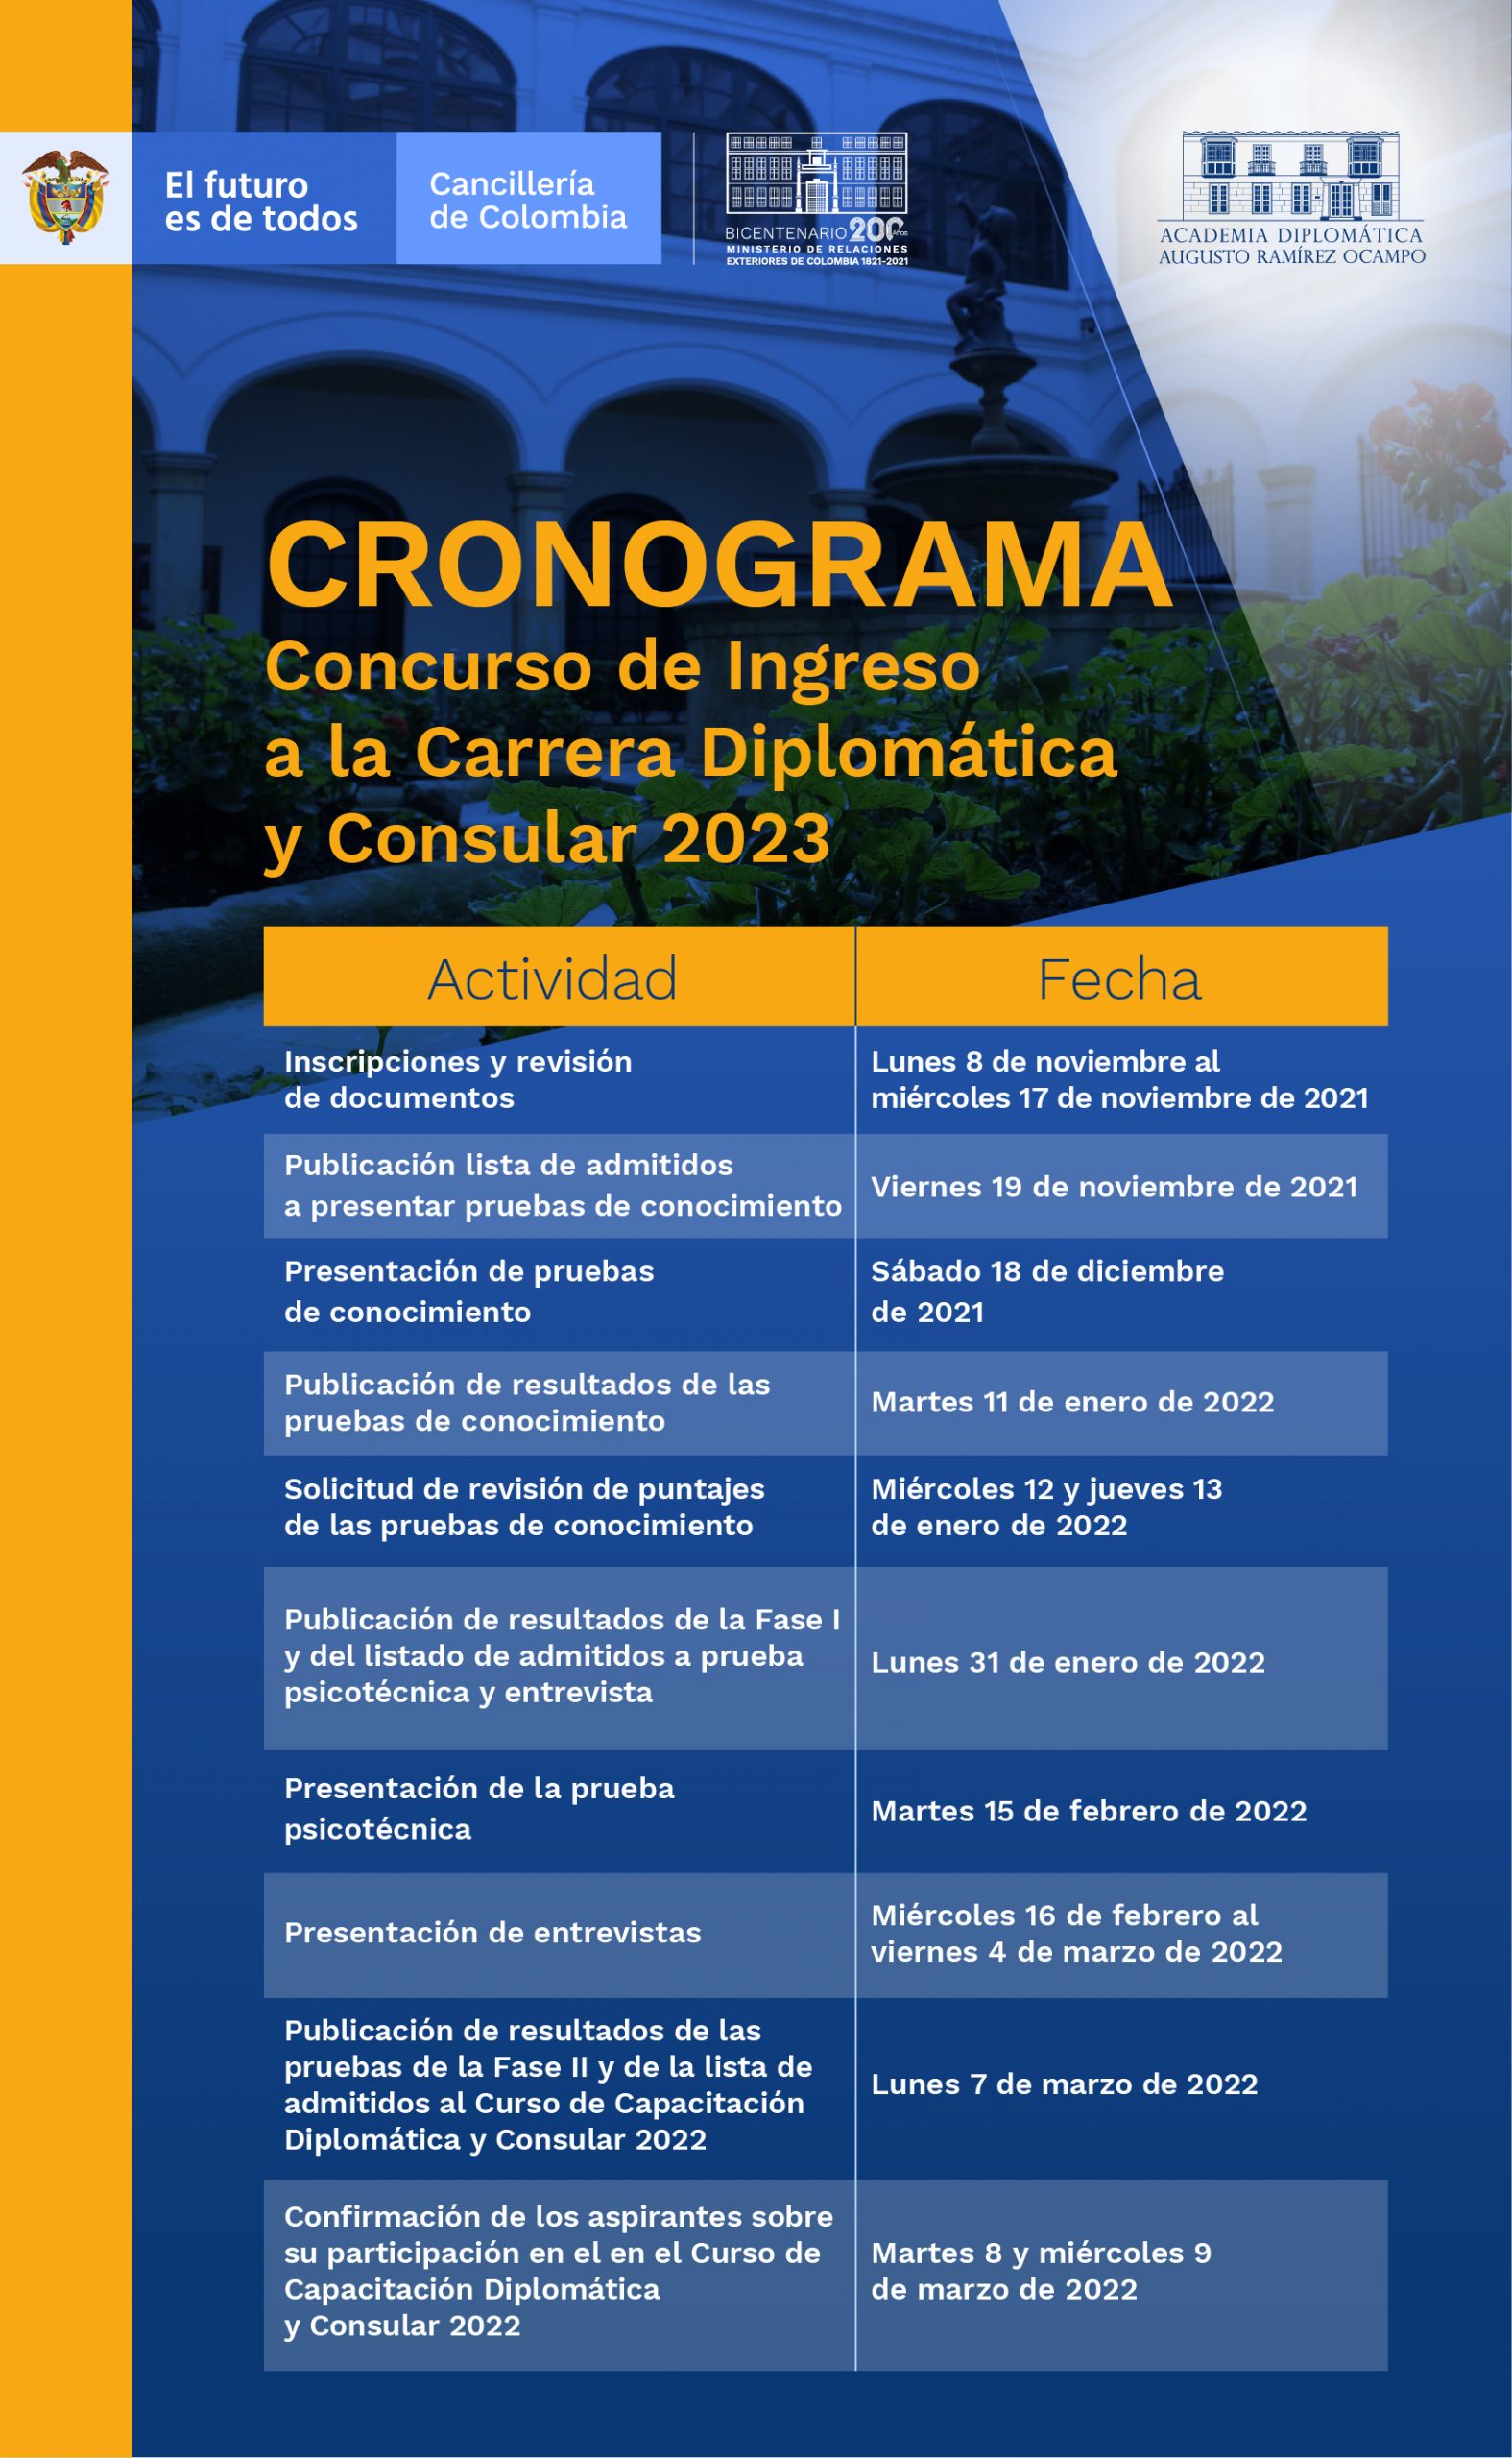 Concurso de Ingreso a la Carrera Diplomática y Consular 2023